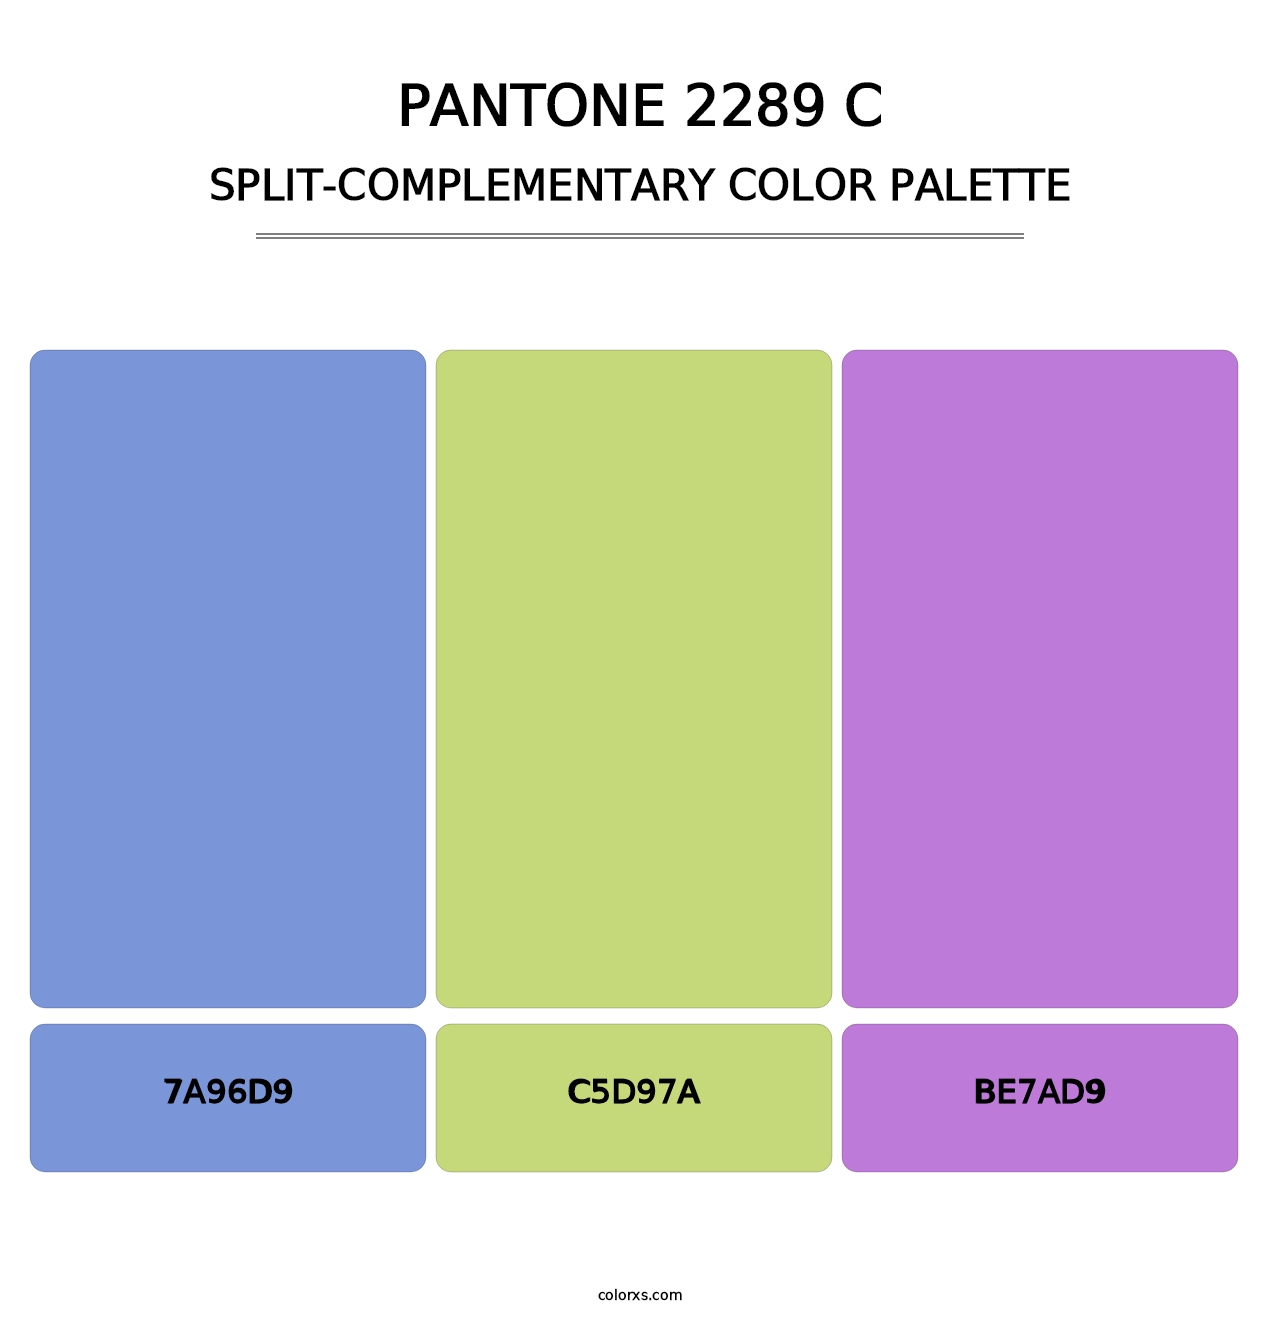 PANTONE 2289 C - Split-Complementary Color Palette